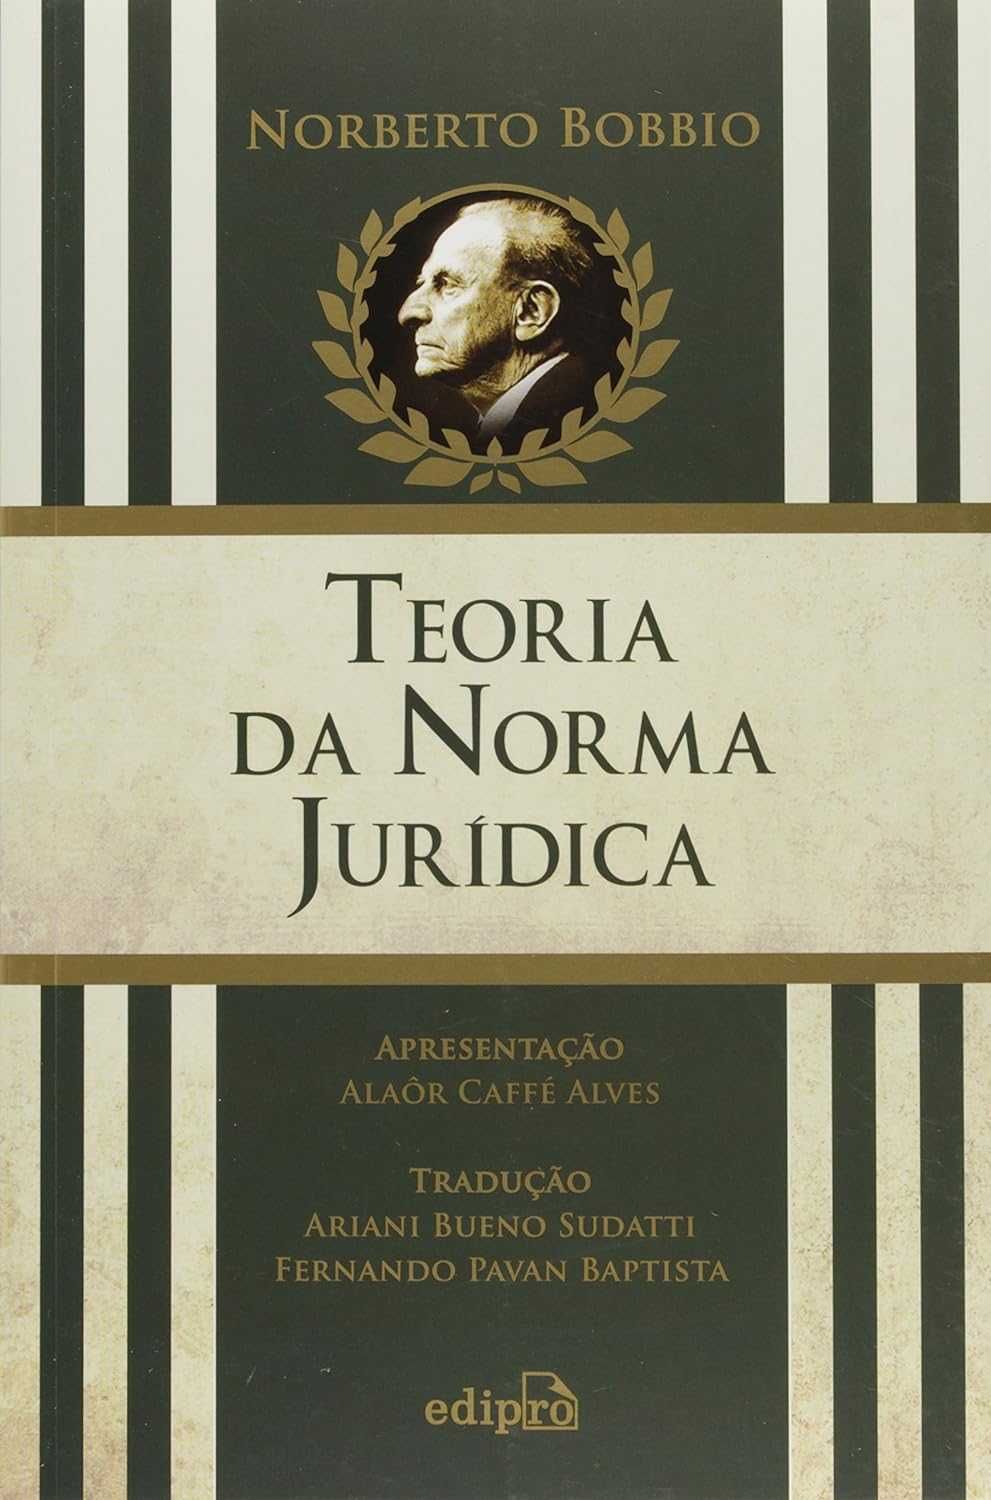 Norberto Bobbio - Pack de livros, alguns não publicados em Portugal